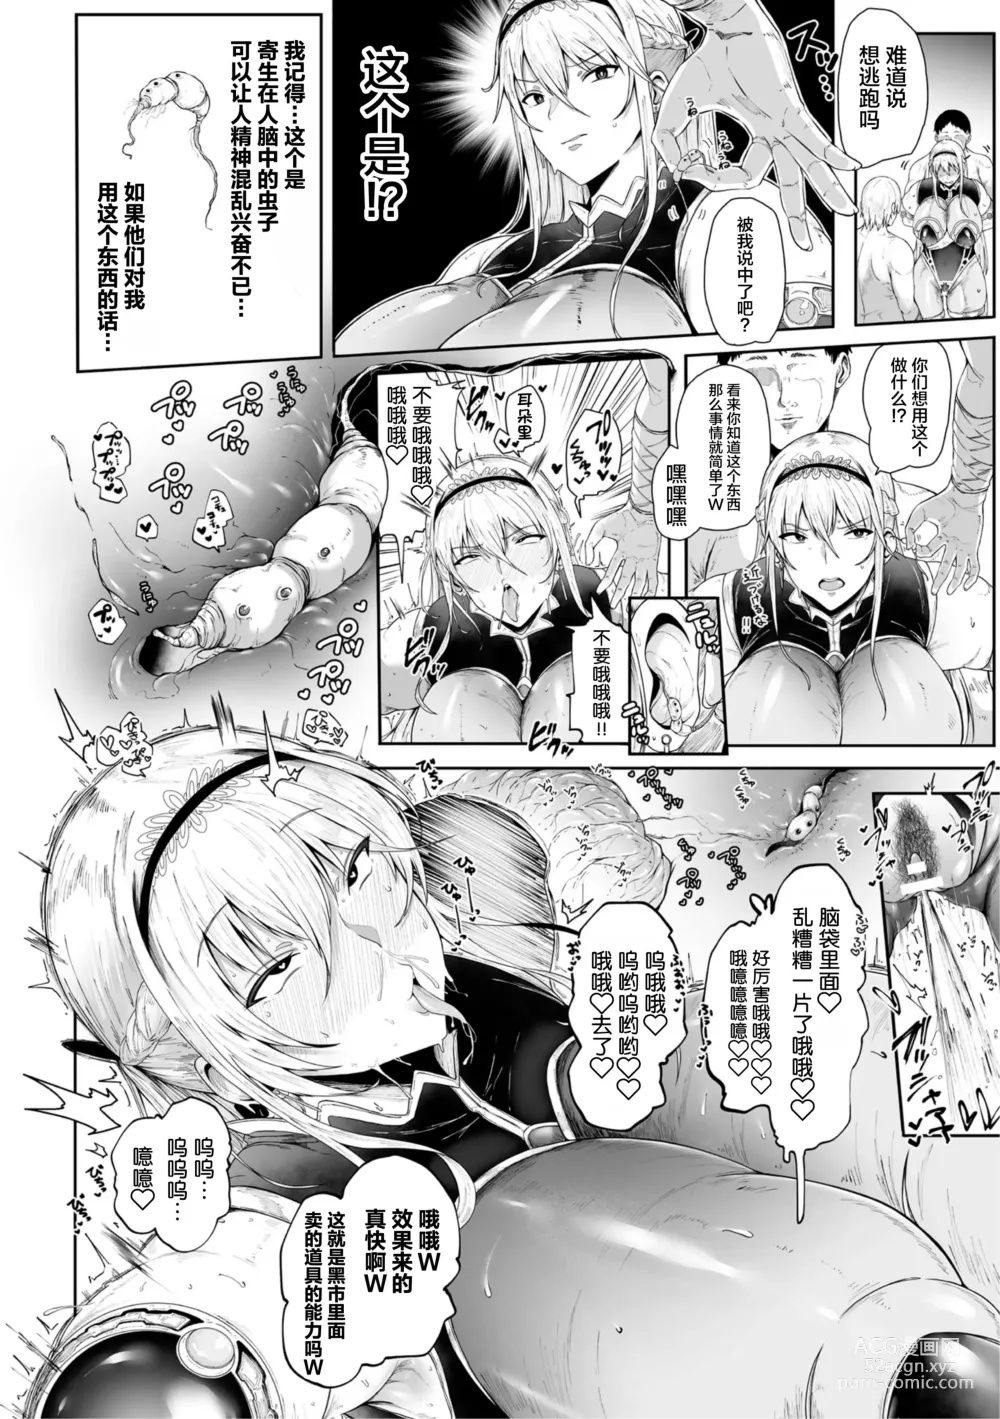 Page 16 of manga Ane-Kishi wa Migawari Nikubenki